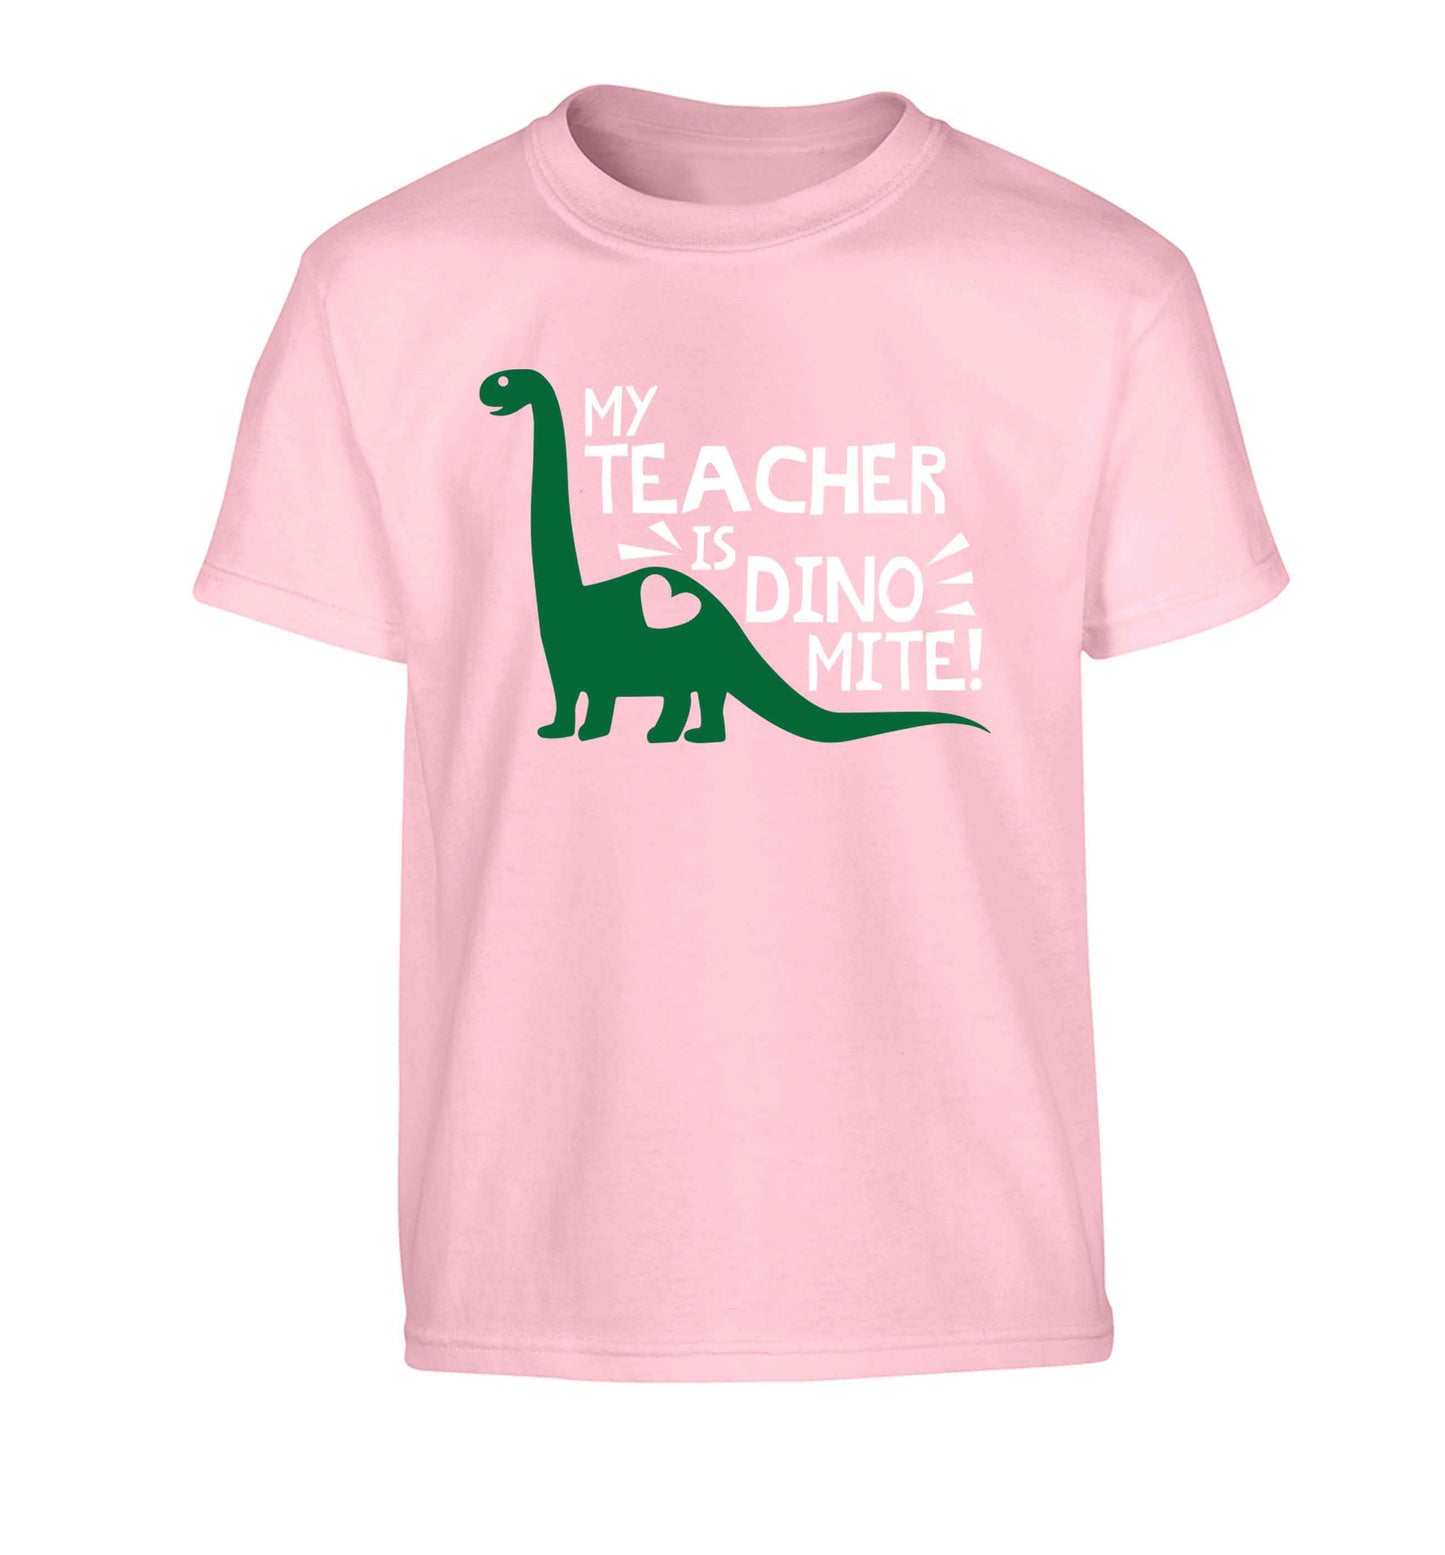 My teacher is dinomite! Children's light pink Tshirt 12-13 Years